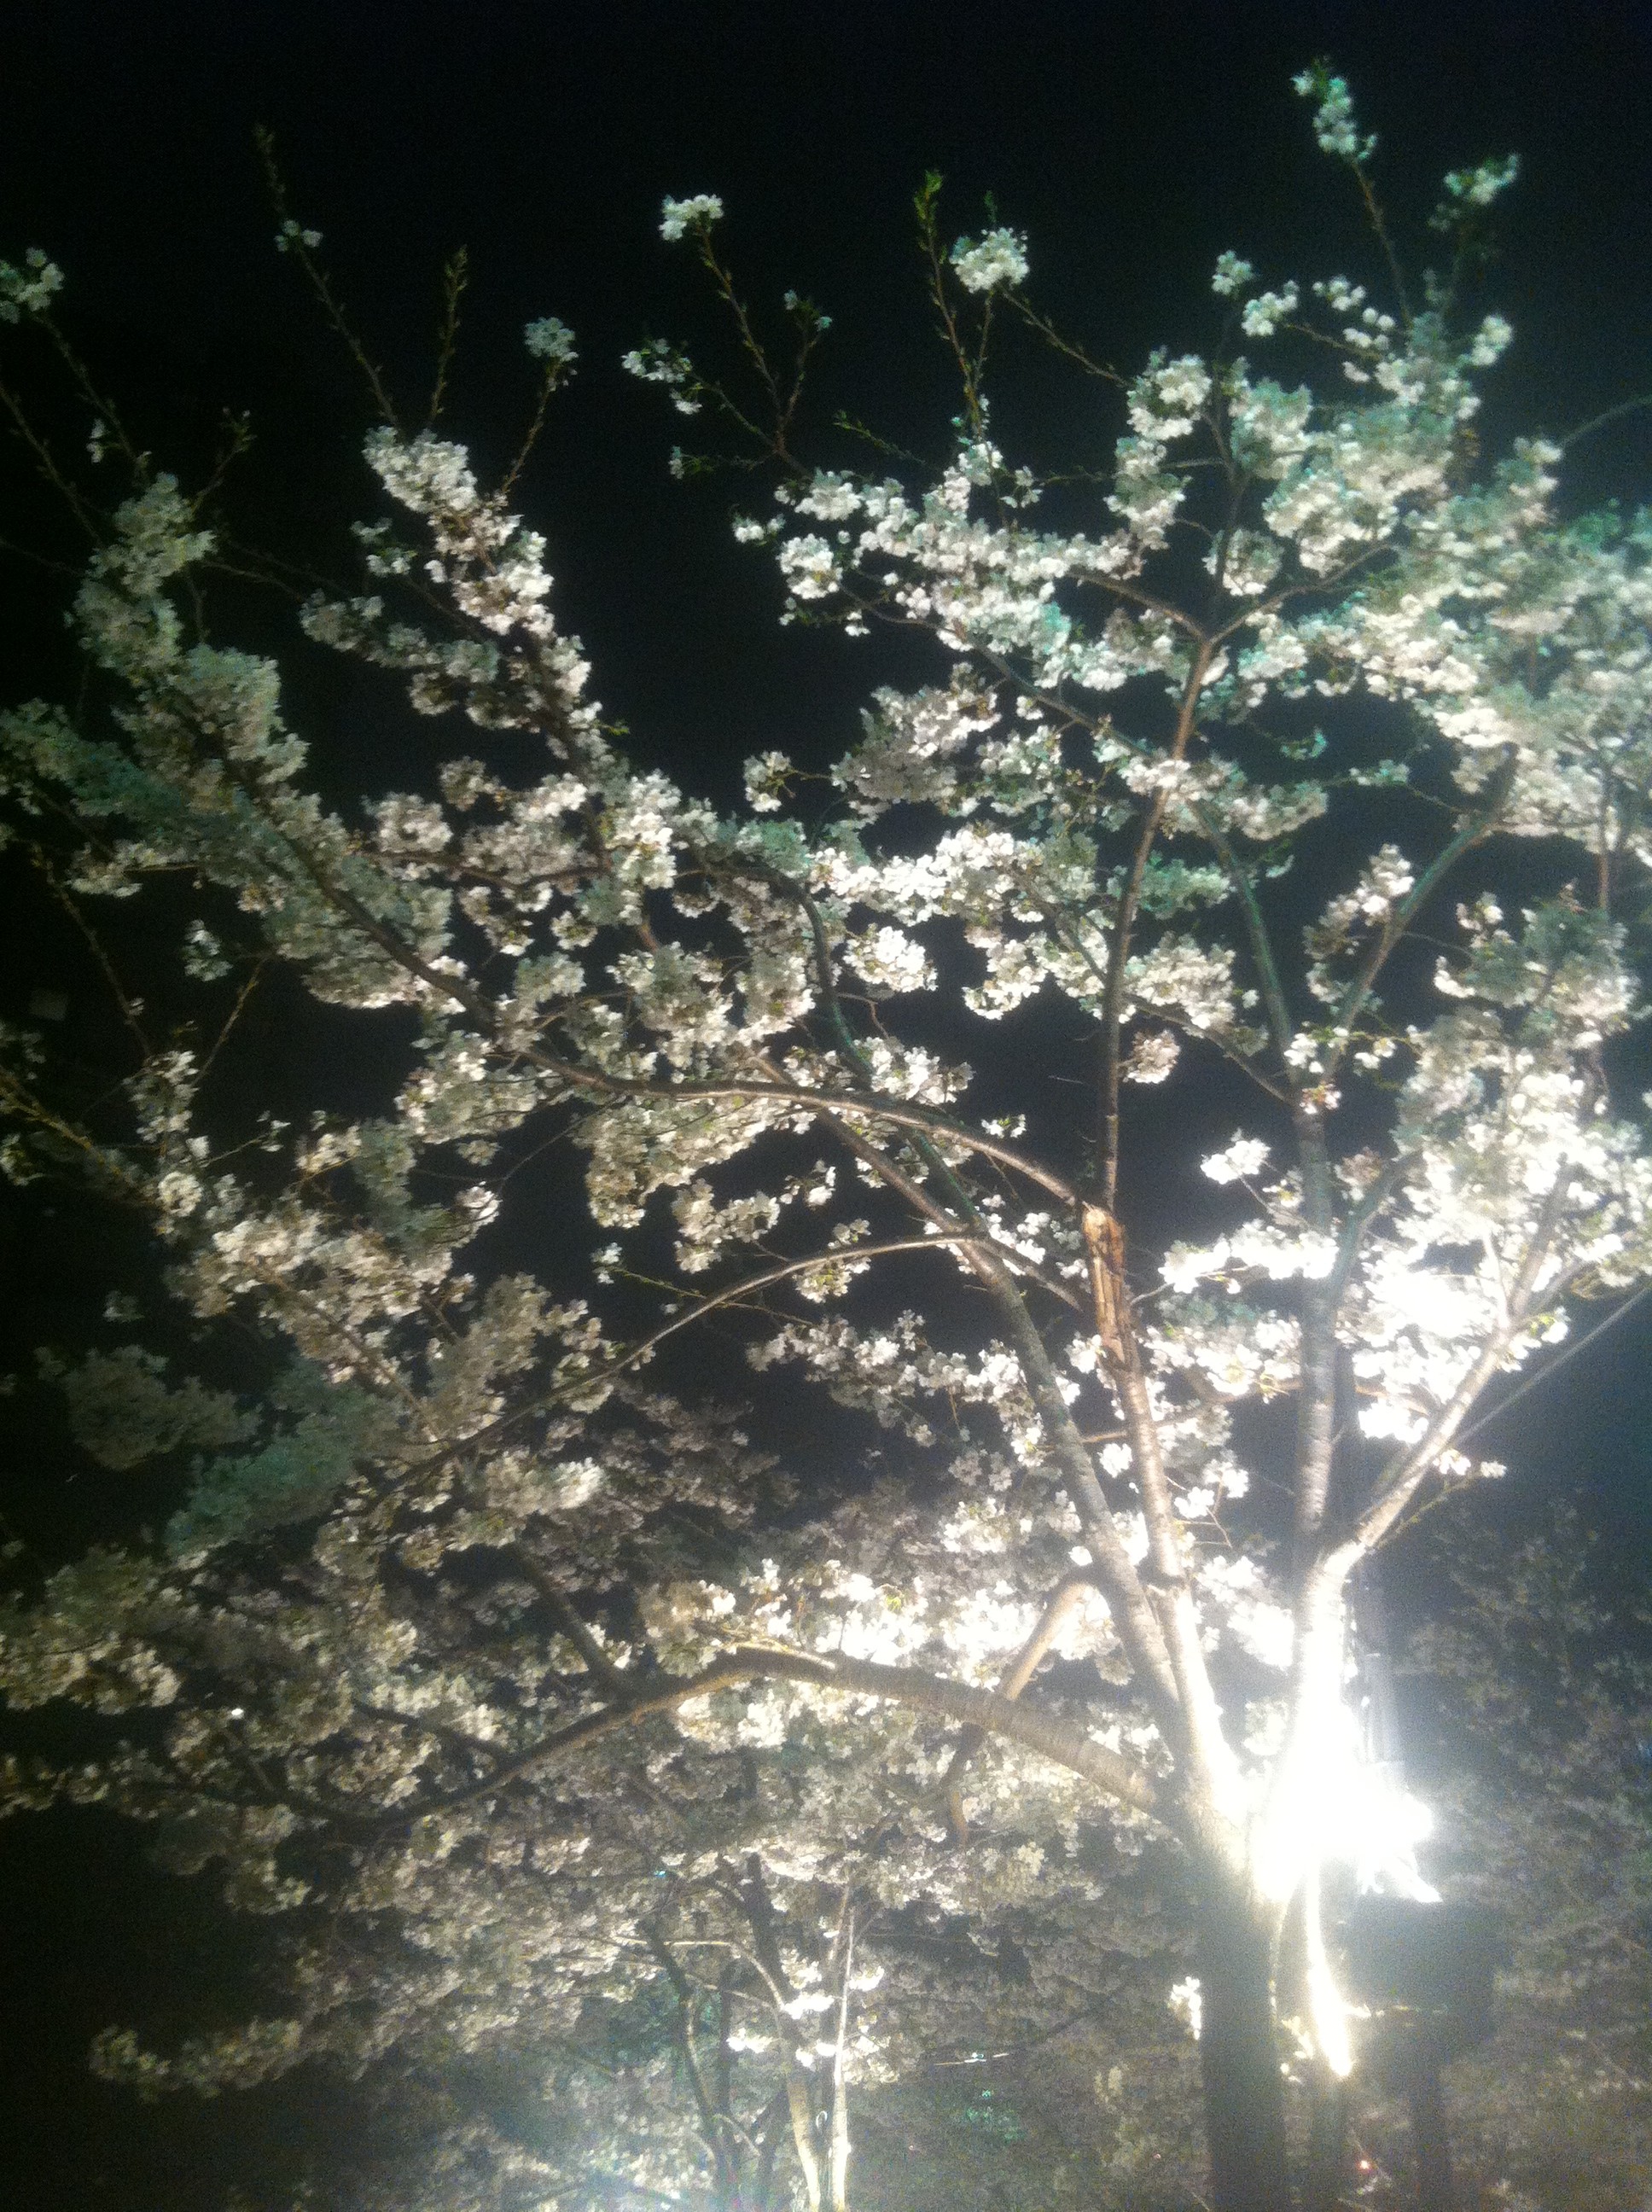 やっぱり毎晩の帰宅を出迎えてくれる夜桜も満開なので